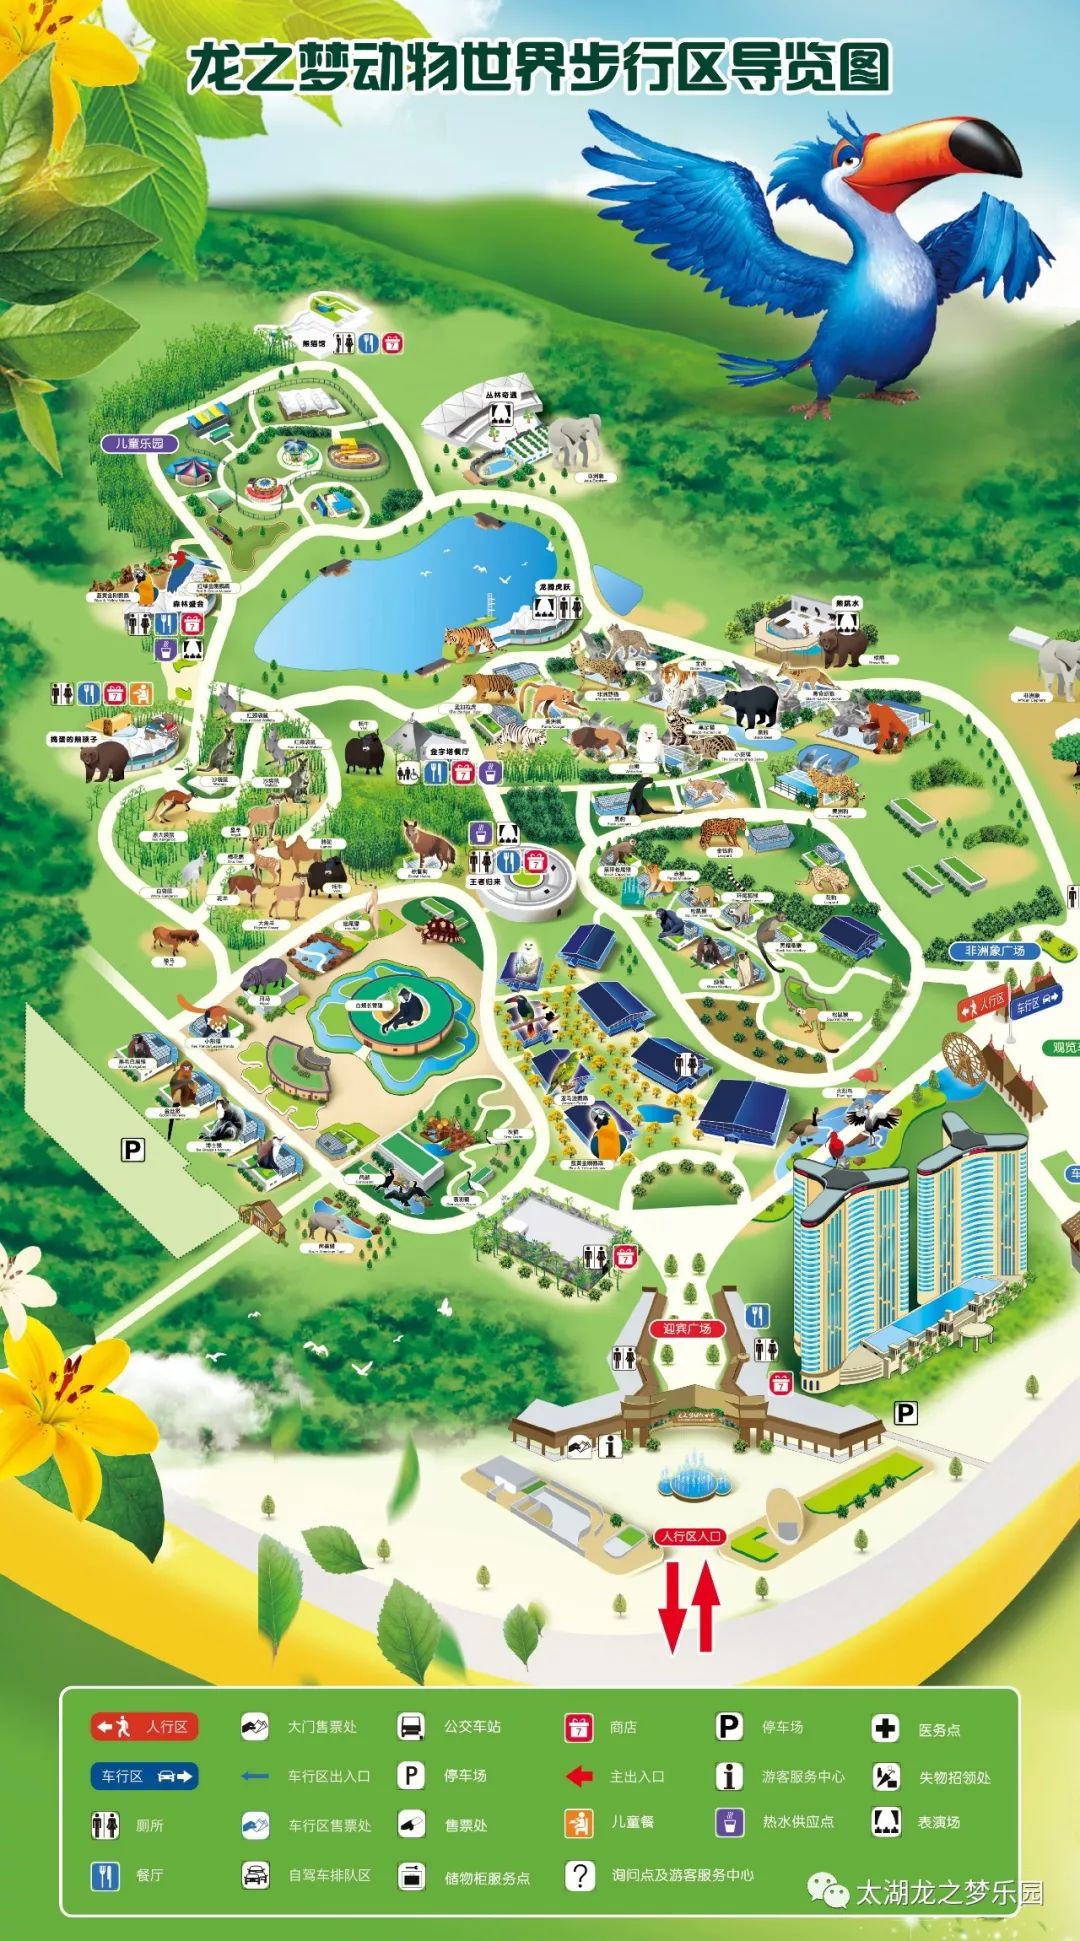 太湖龙之梦乐园动物世界步行区导览图